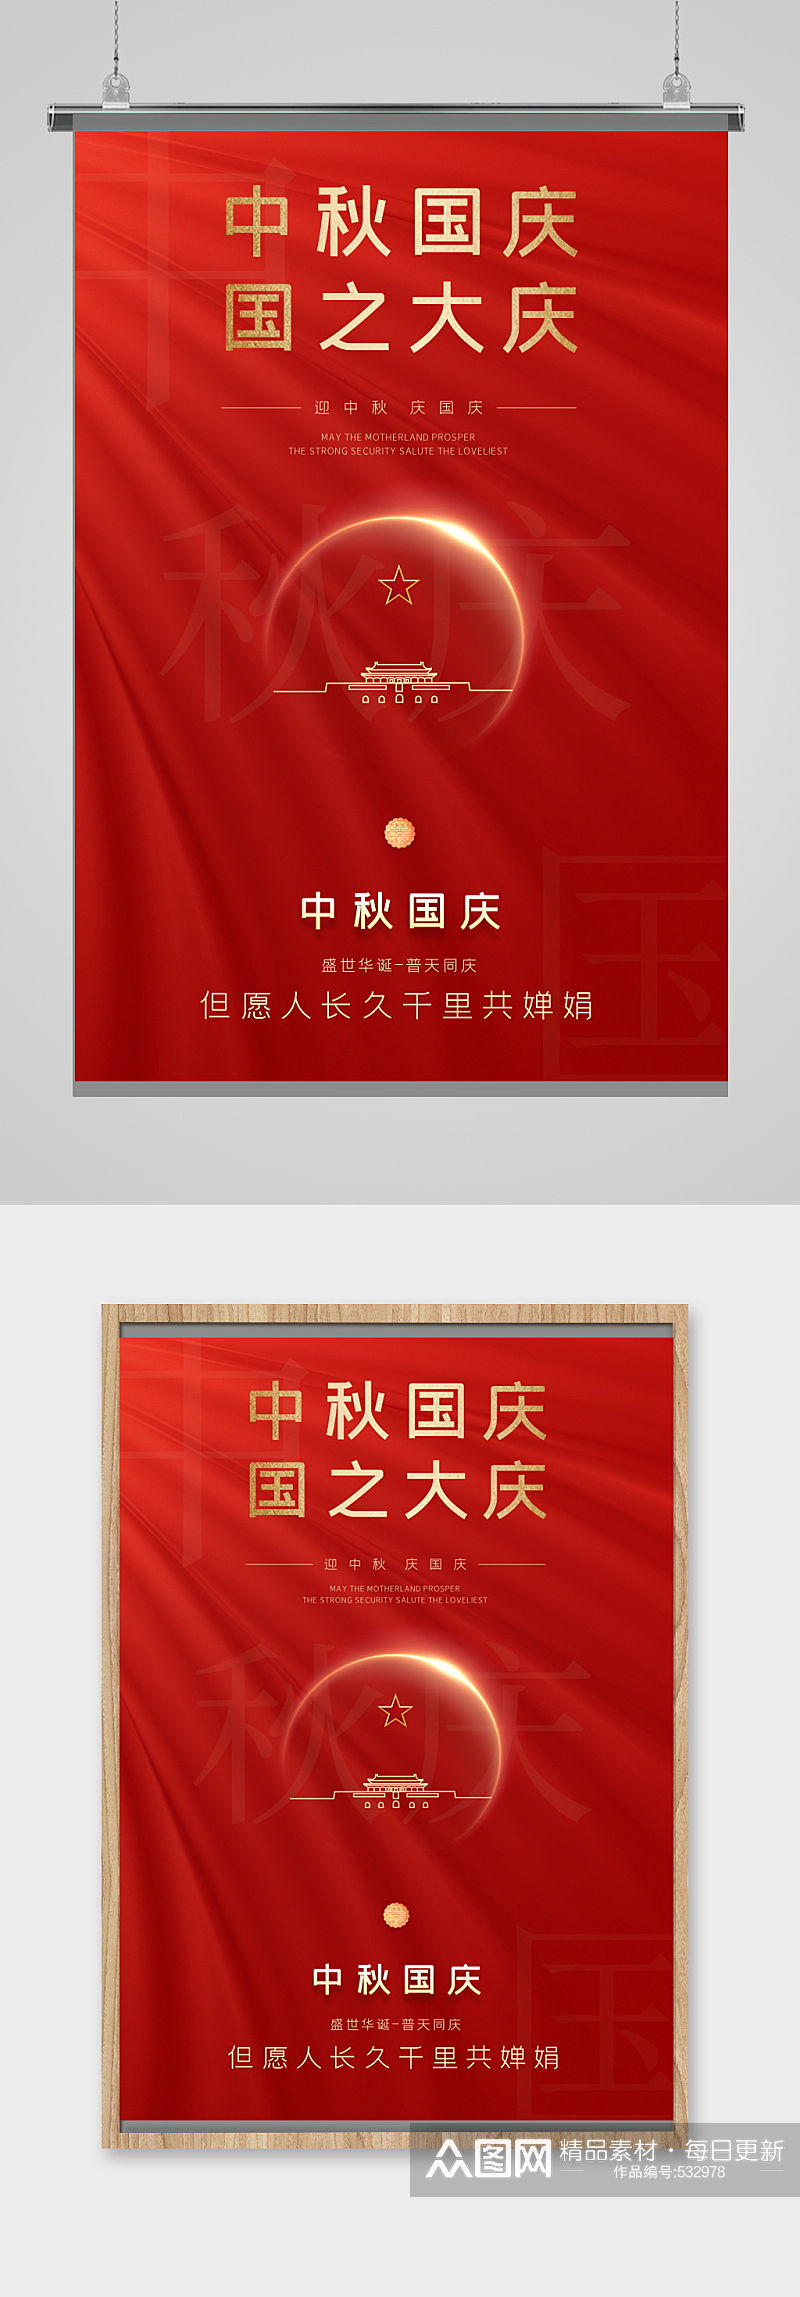 喜迎欢度国庆节建国71周年推广海报单页素材